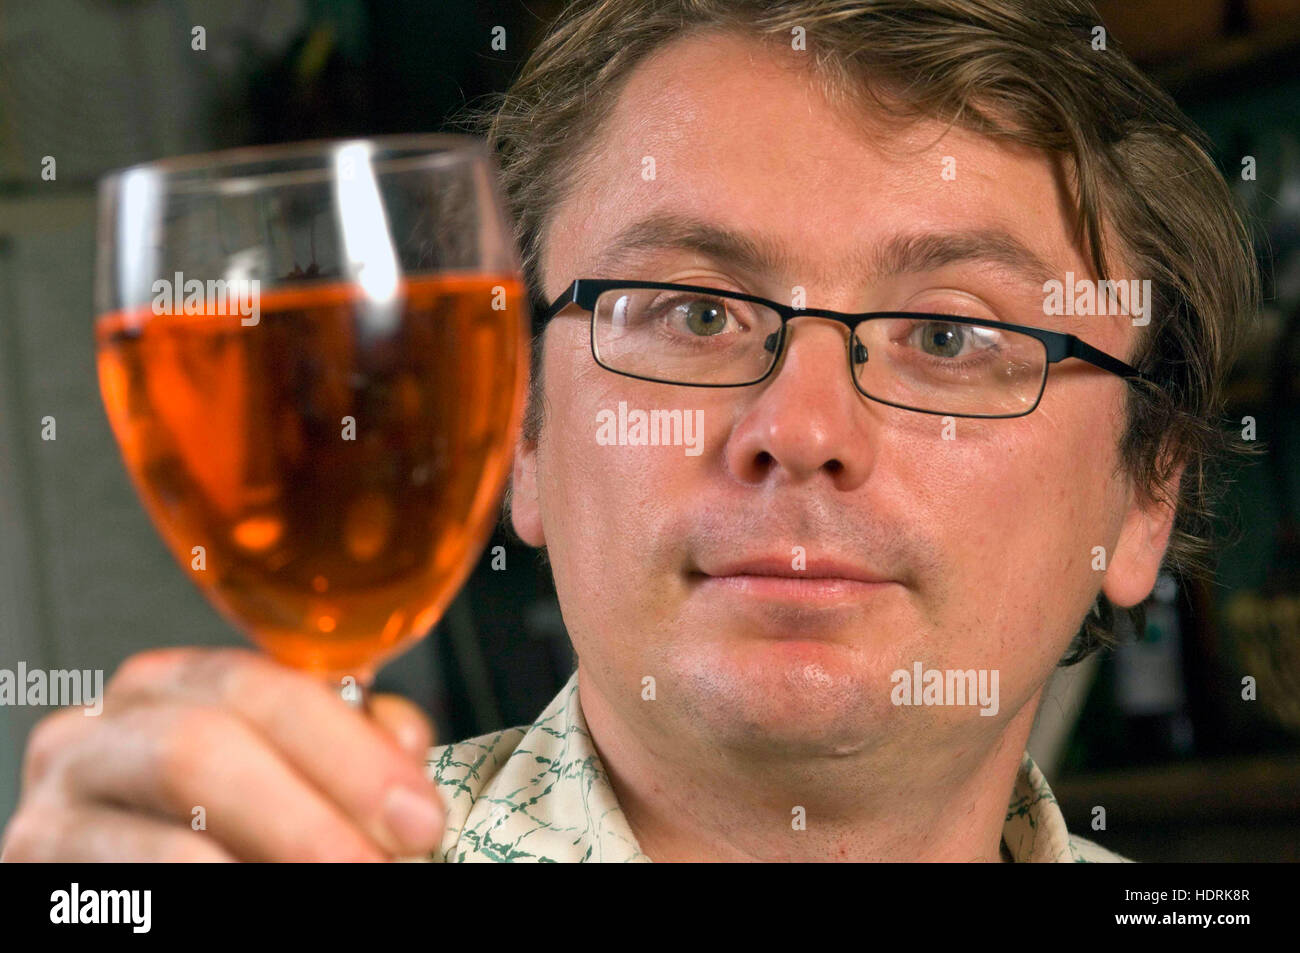 Andy hamilton fa propri alcolici a casa da ingredienti semplici nella sua cucina e ha scritto un libro 'booze gratis'. Foto Stock